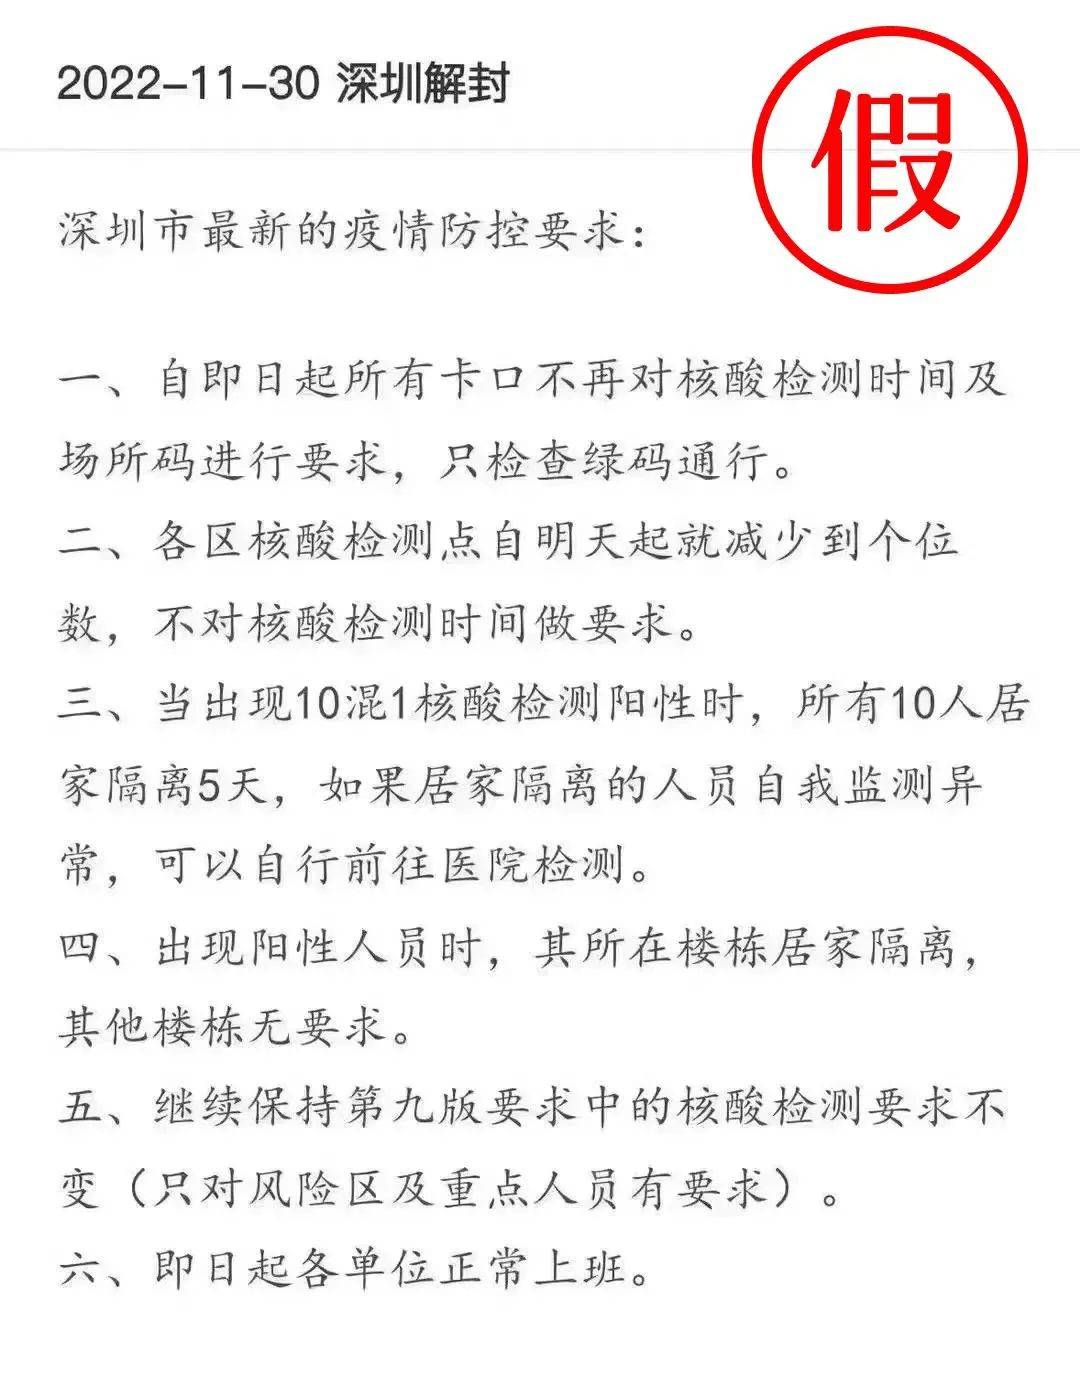 【热点】深圳卫健委公众号被投诉，不随大流的论点 - 知乎